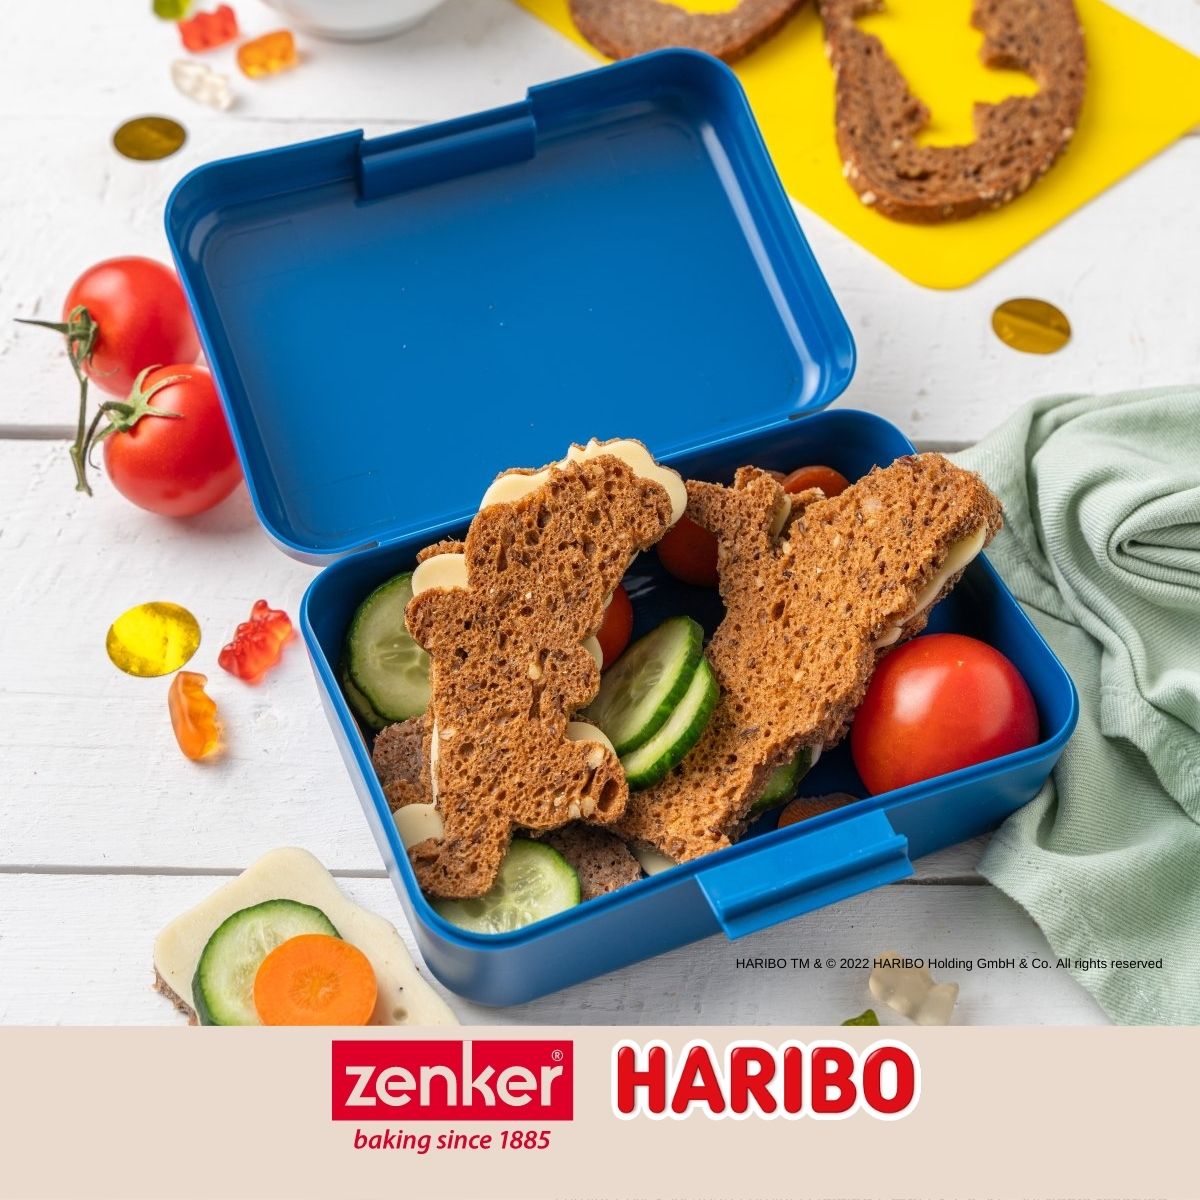 Boîte alimentaire avec couvercle en plastique 16,5 x 11,5 cm Zenker Haribo